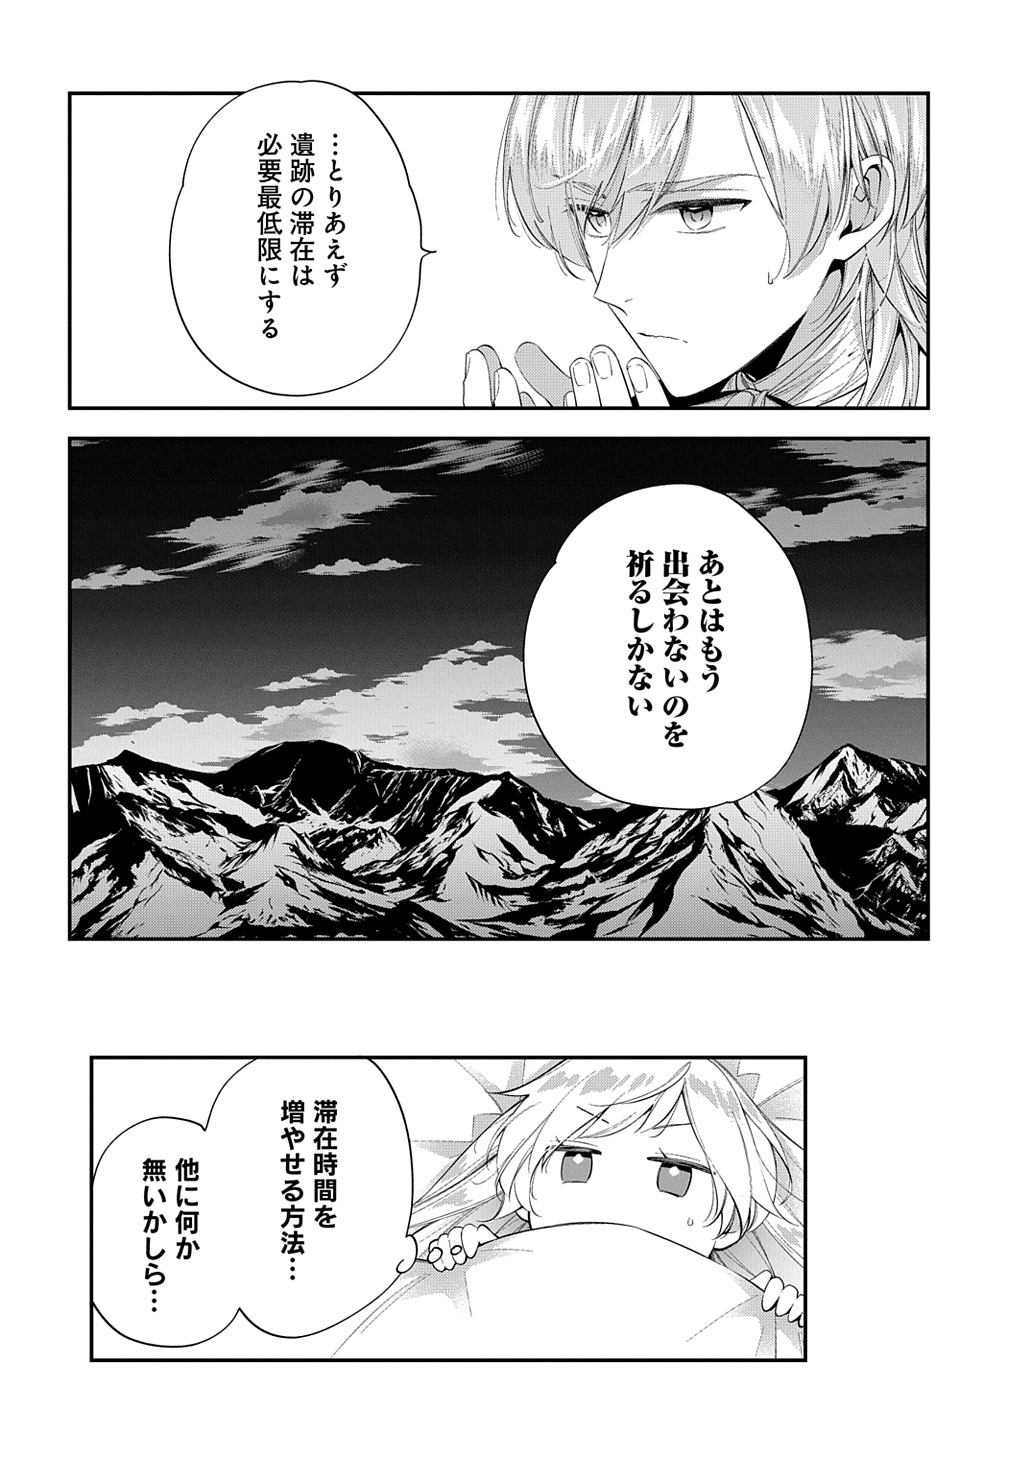 Outaishi ni Konyaku Hakisareta no de, Mou Baka no Furi wa Yameyou to Omoimasu - Chapter 23 - Page 26